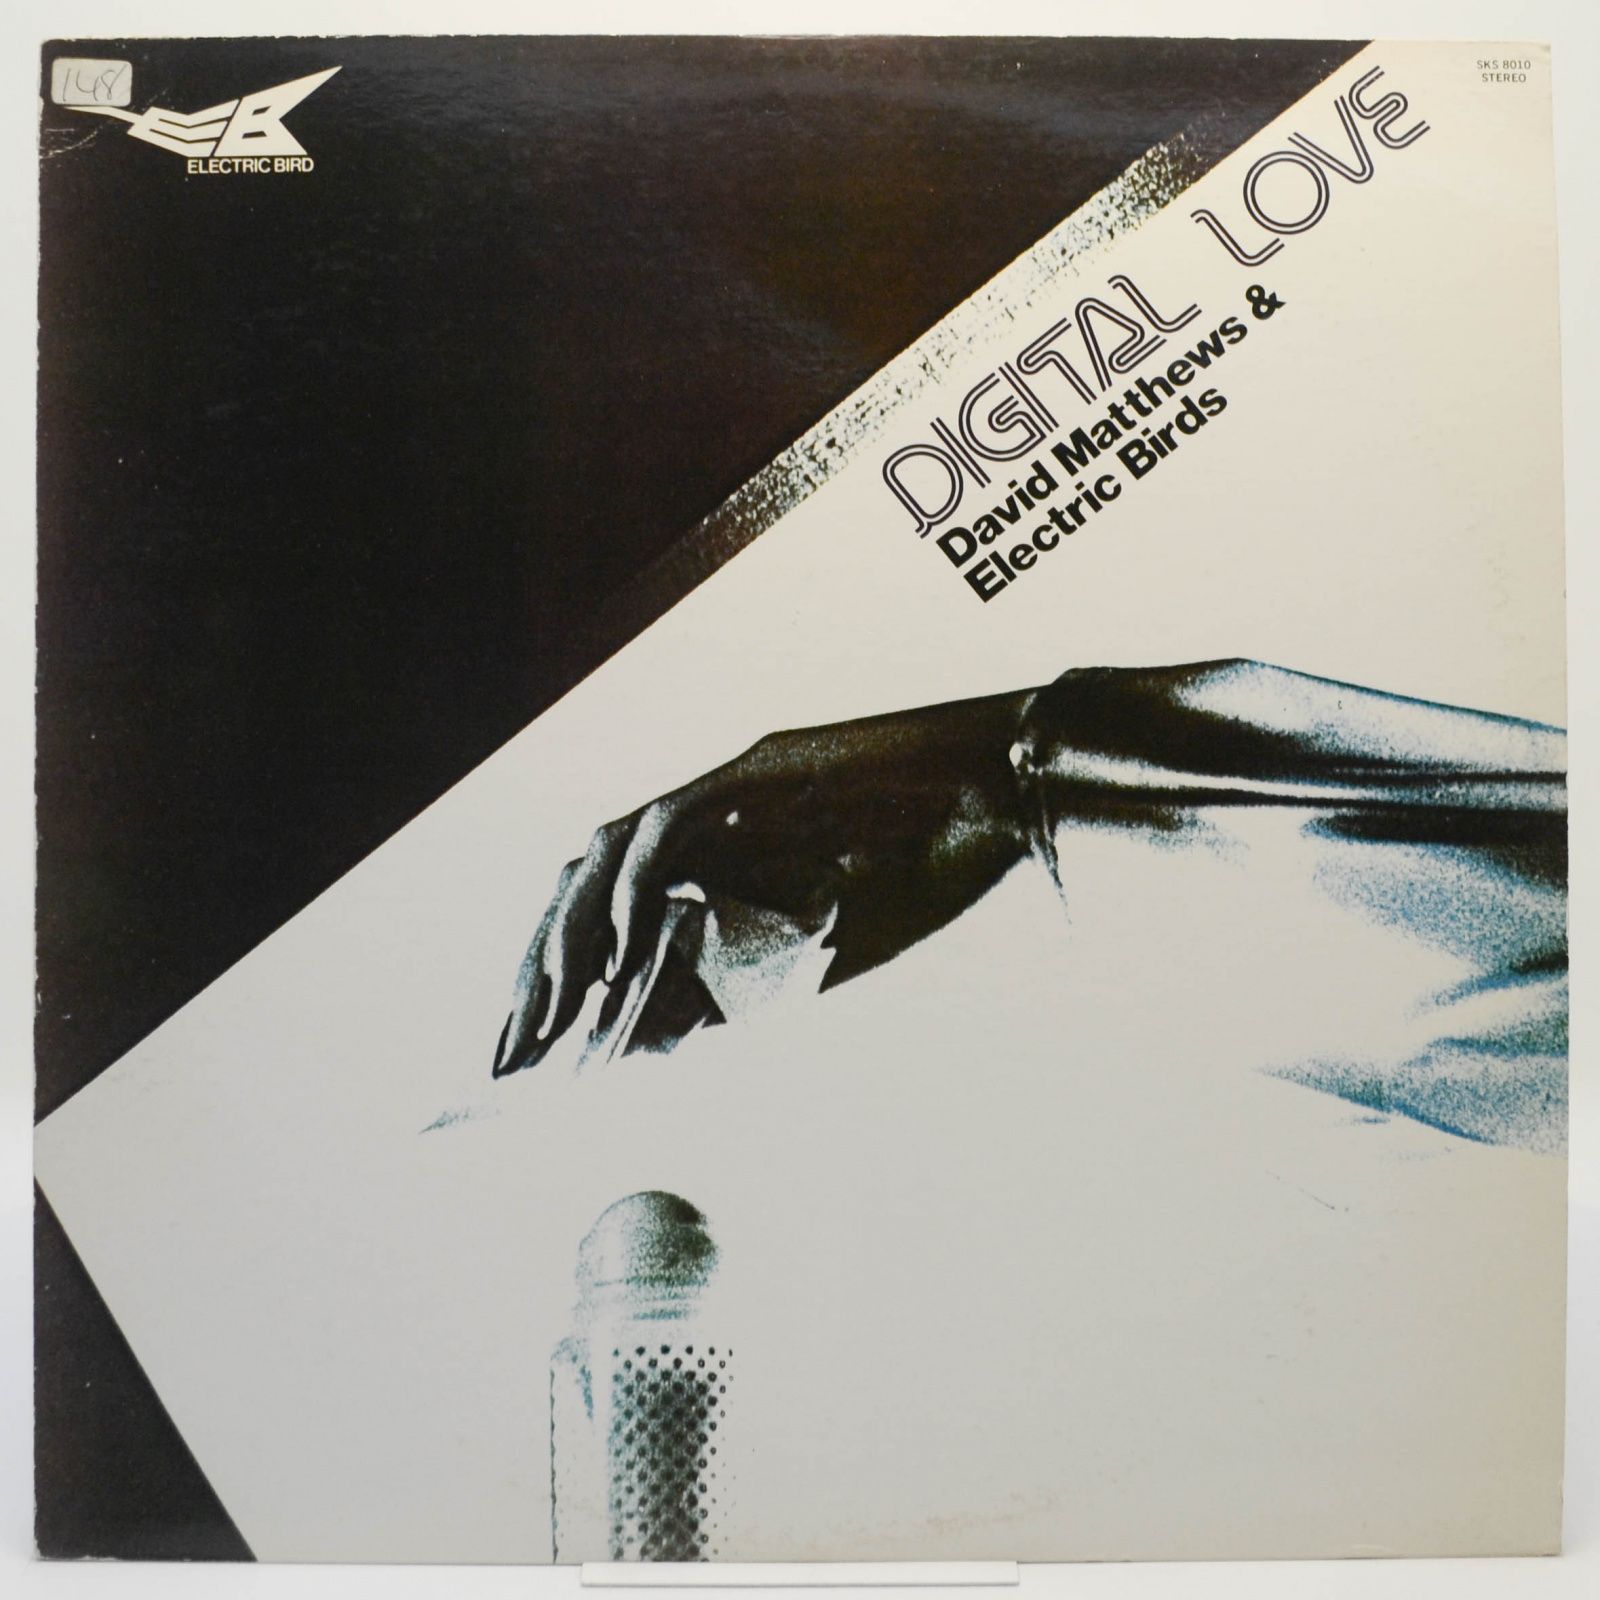 Digital Love, 1979